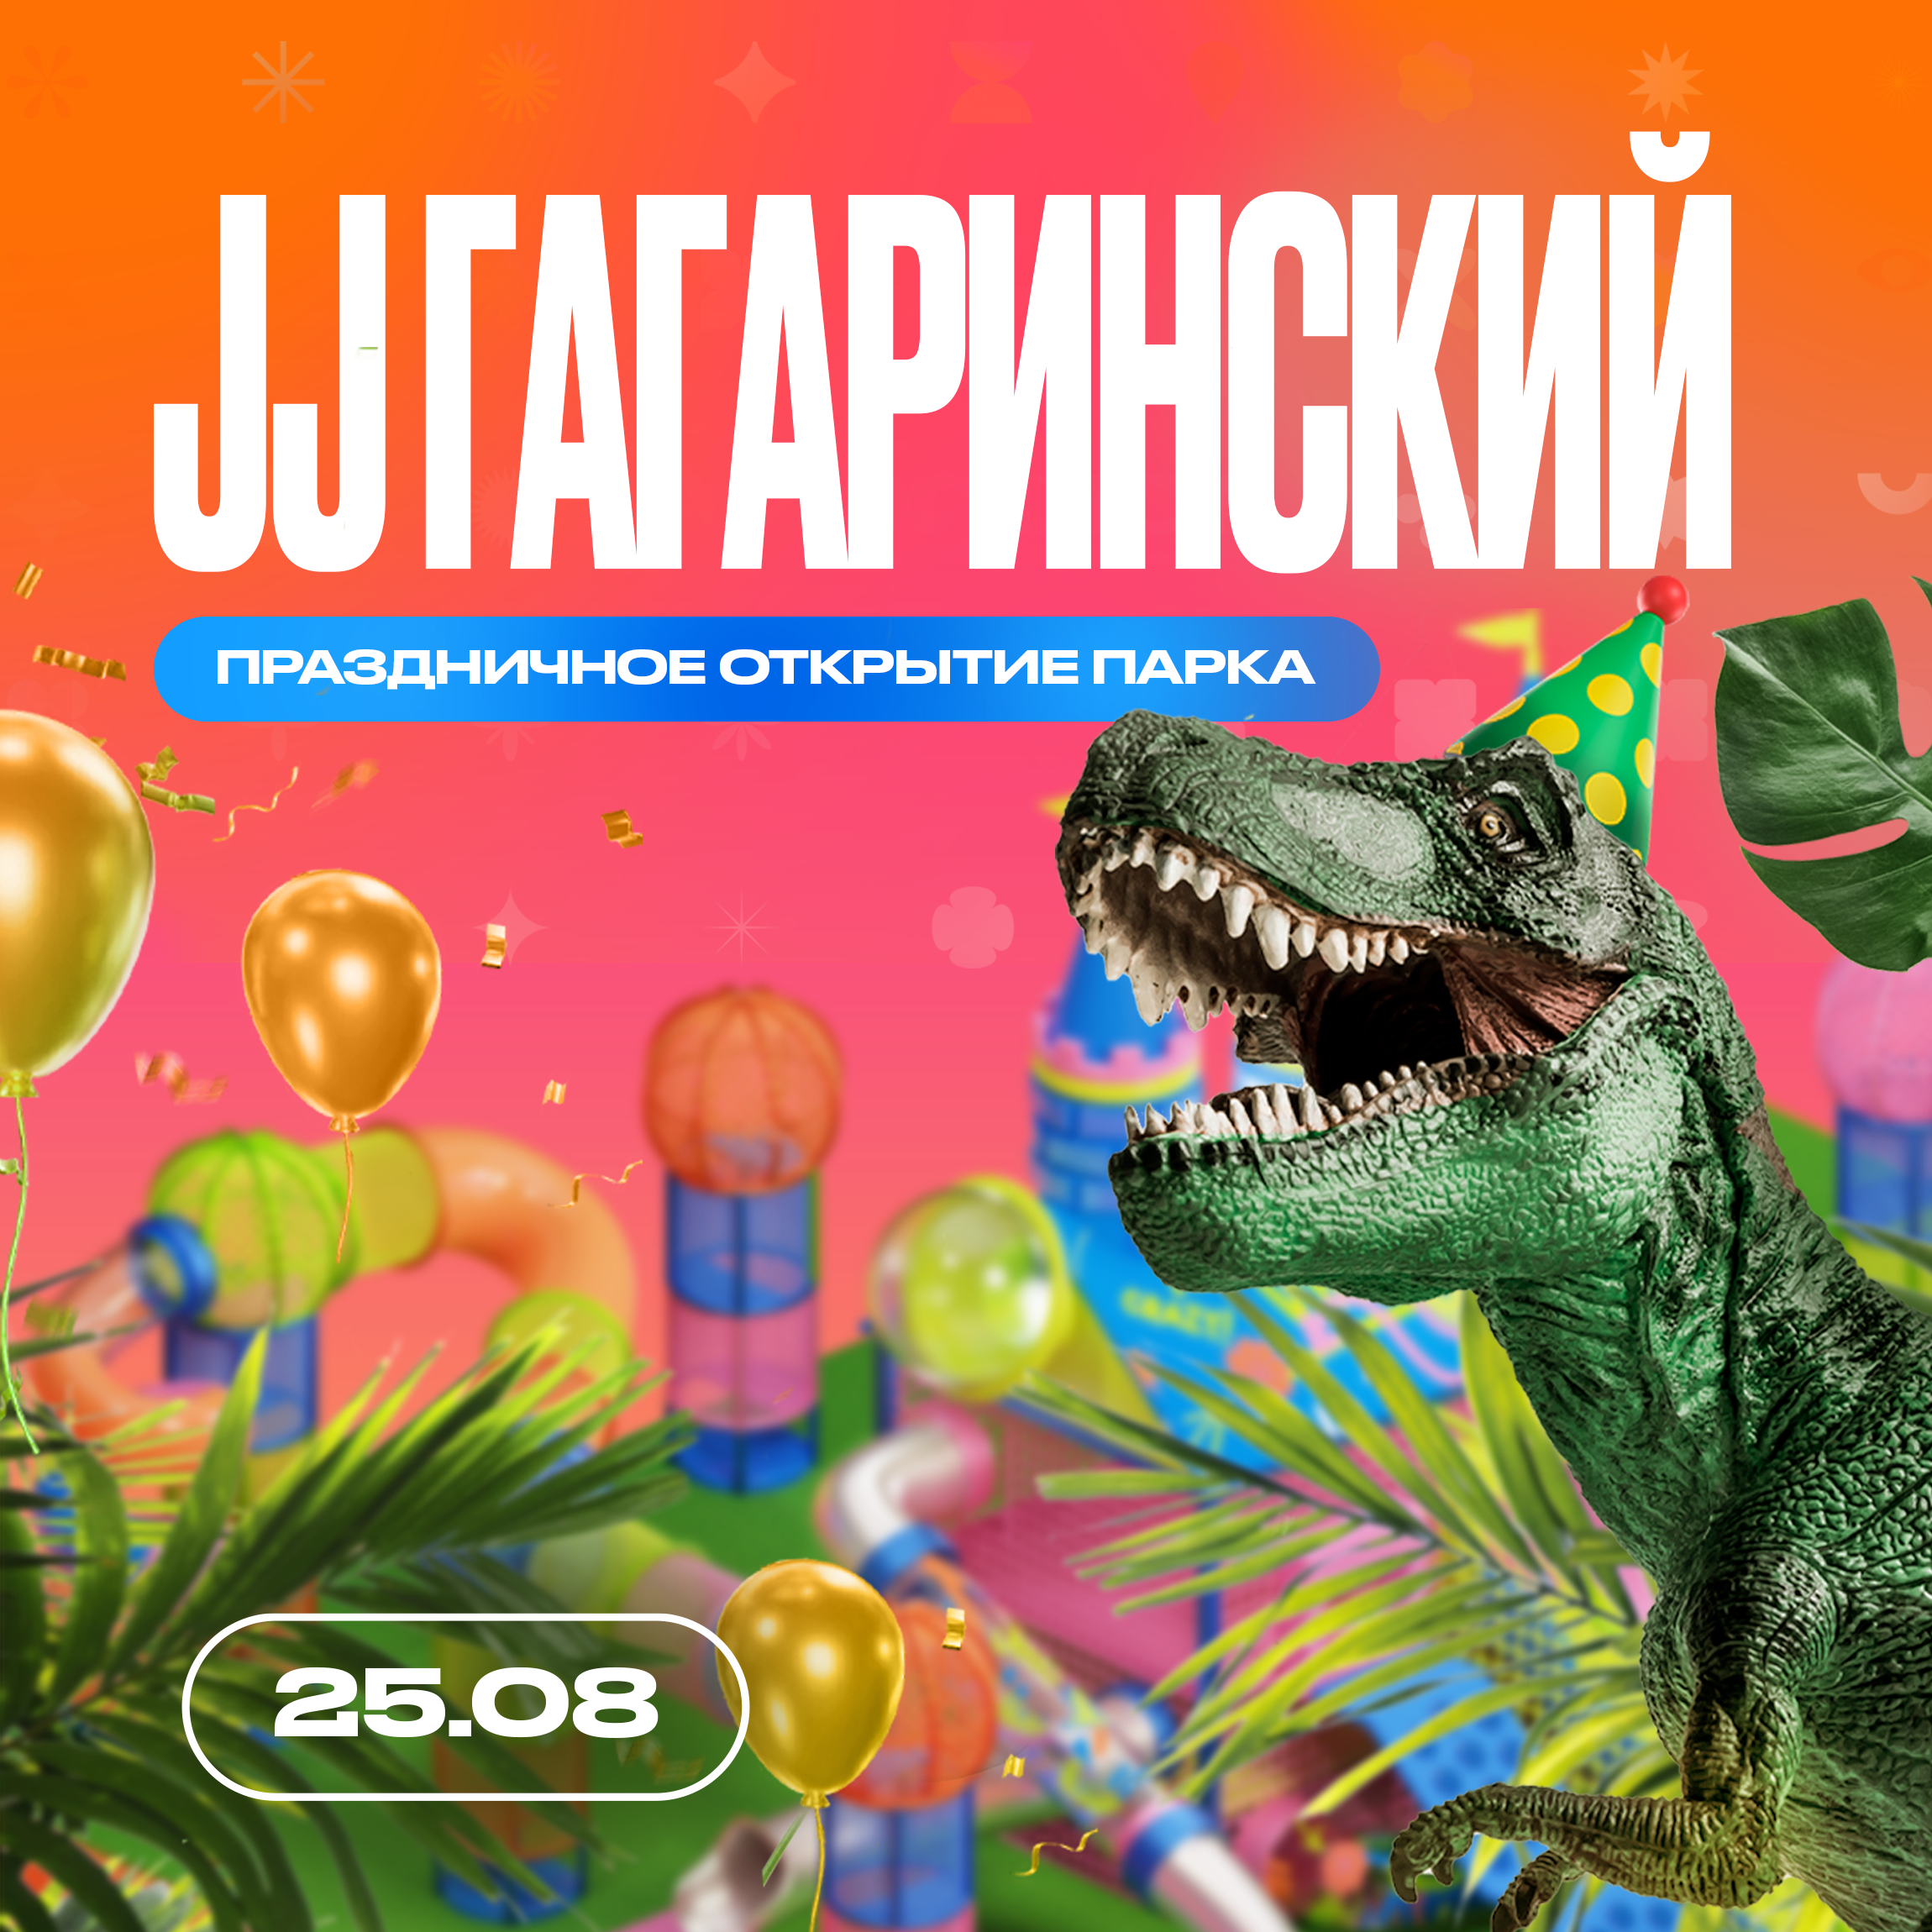 ✨🦖 25 августа — Праздничное открытие парка Joki Joya Гагаринский — Мир JJ-ского периода!